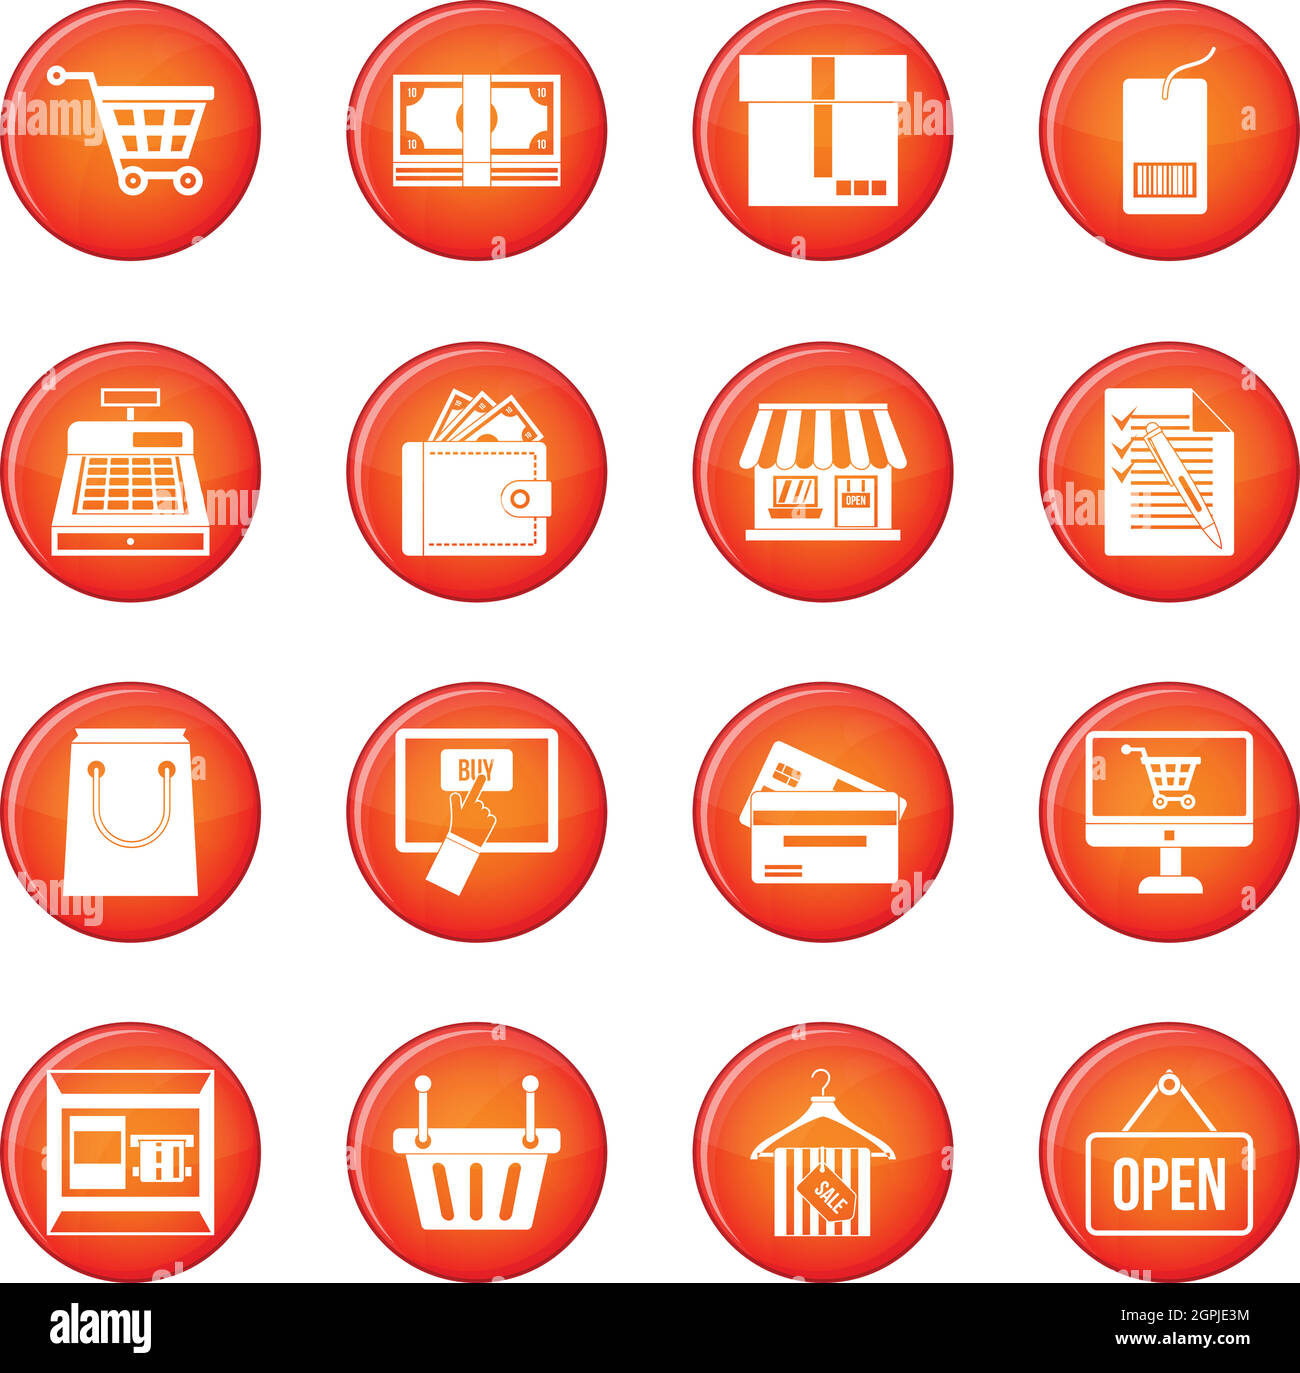 Shopping icons vector set Stock Vector